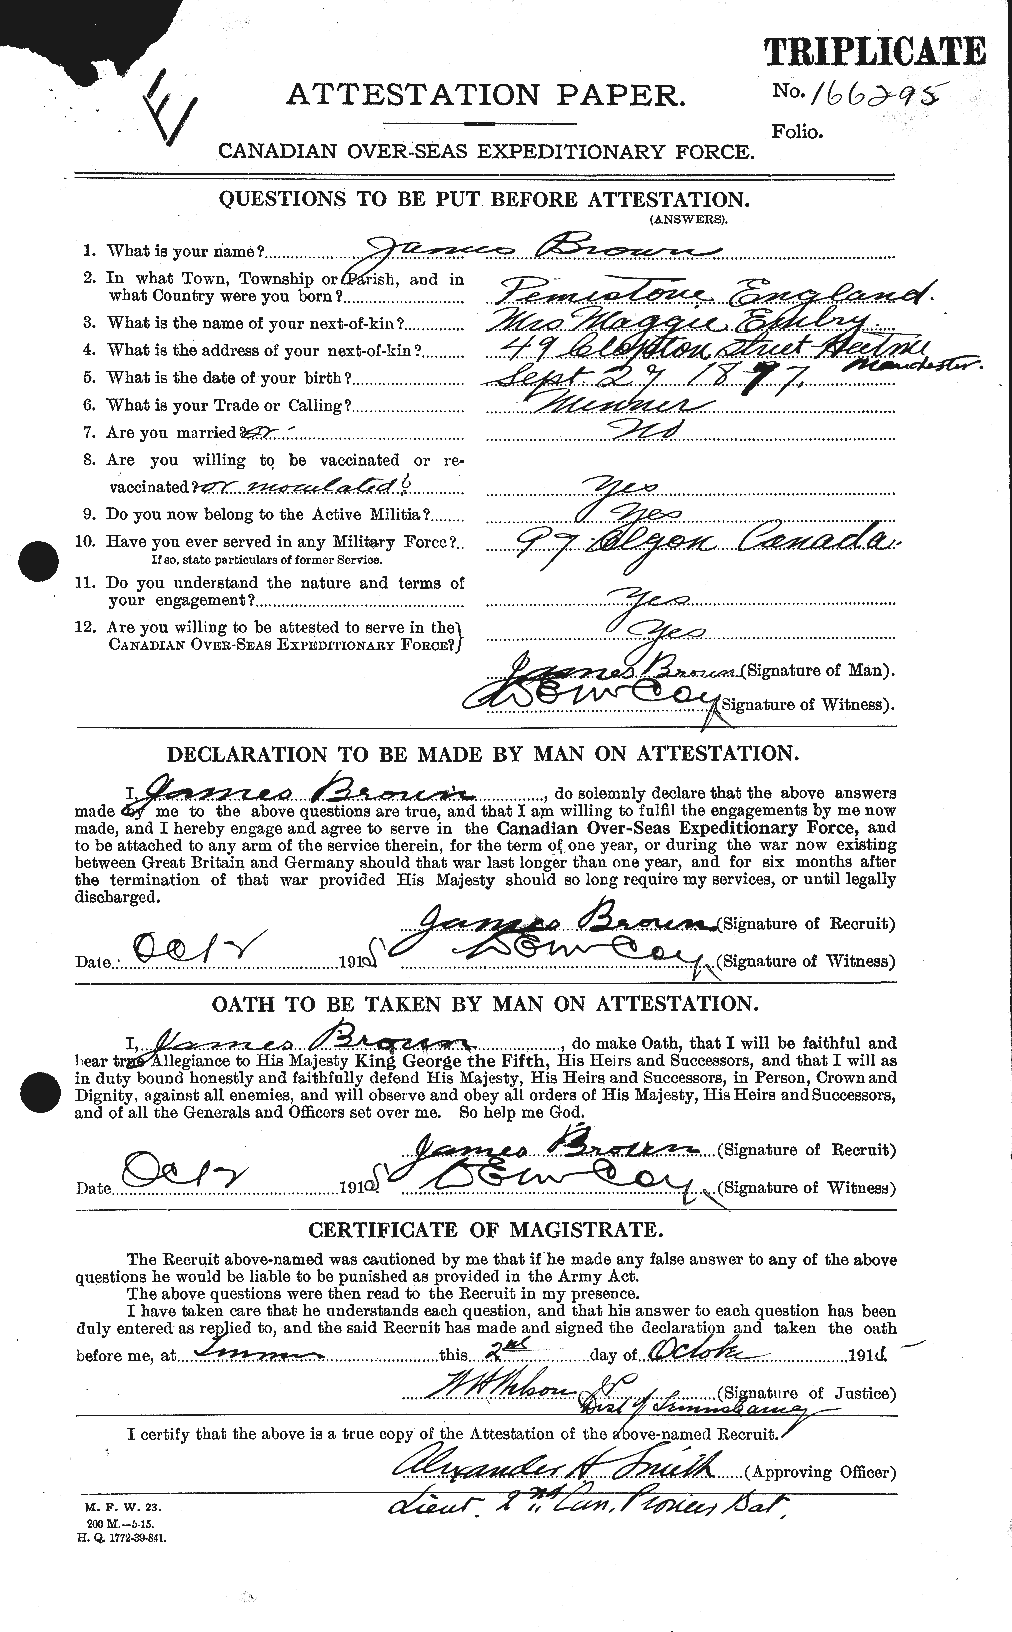 Dossiers du Personnel de la Première Guerre mondiale - CEC 265730a